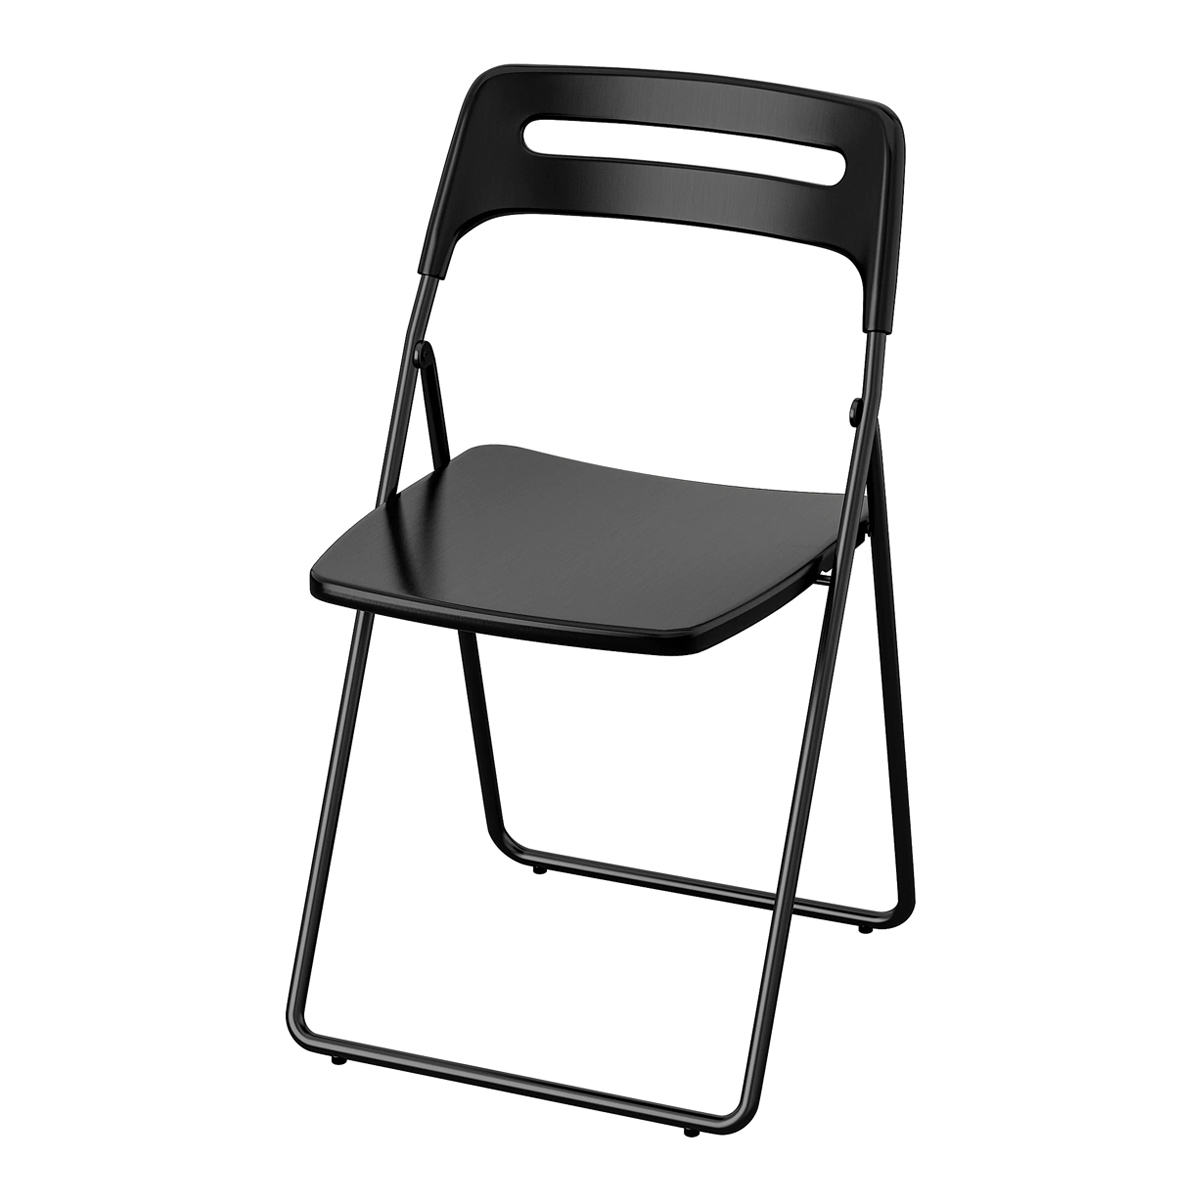 NISSE stolica na rasklapanje, crna